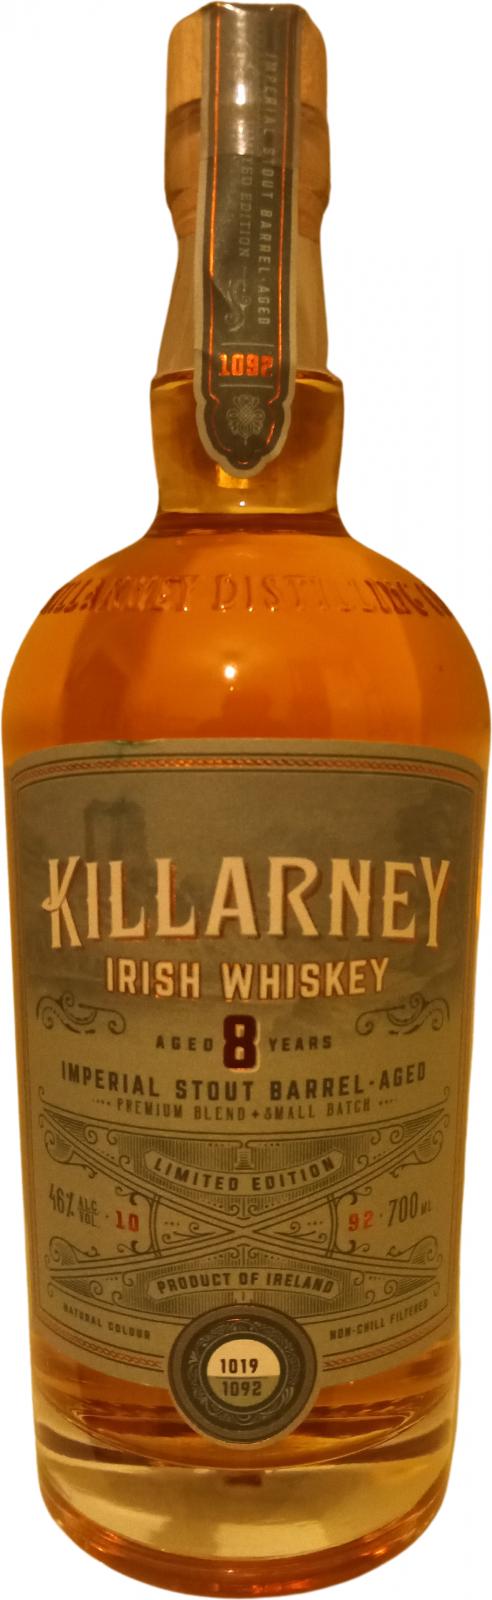 Killarney Irish Whiskey 08-year-old KDco